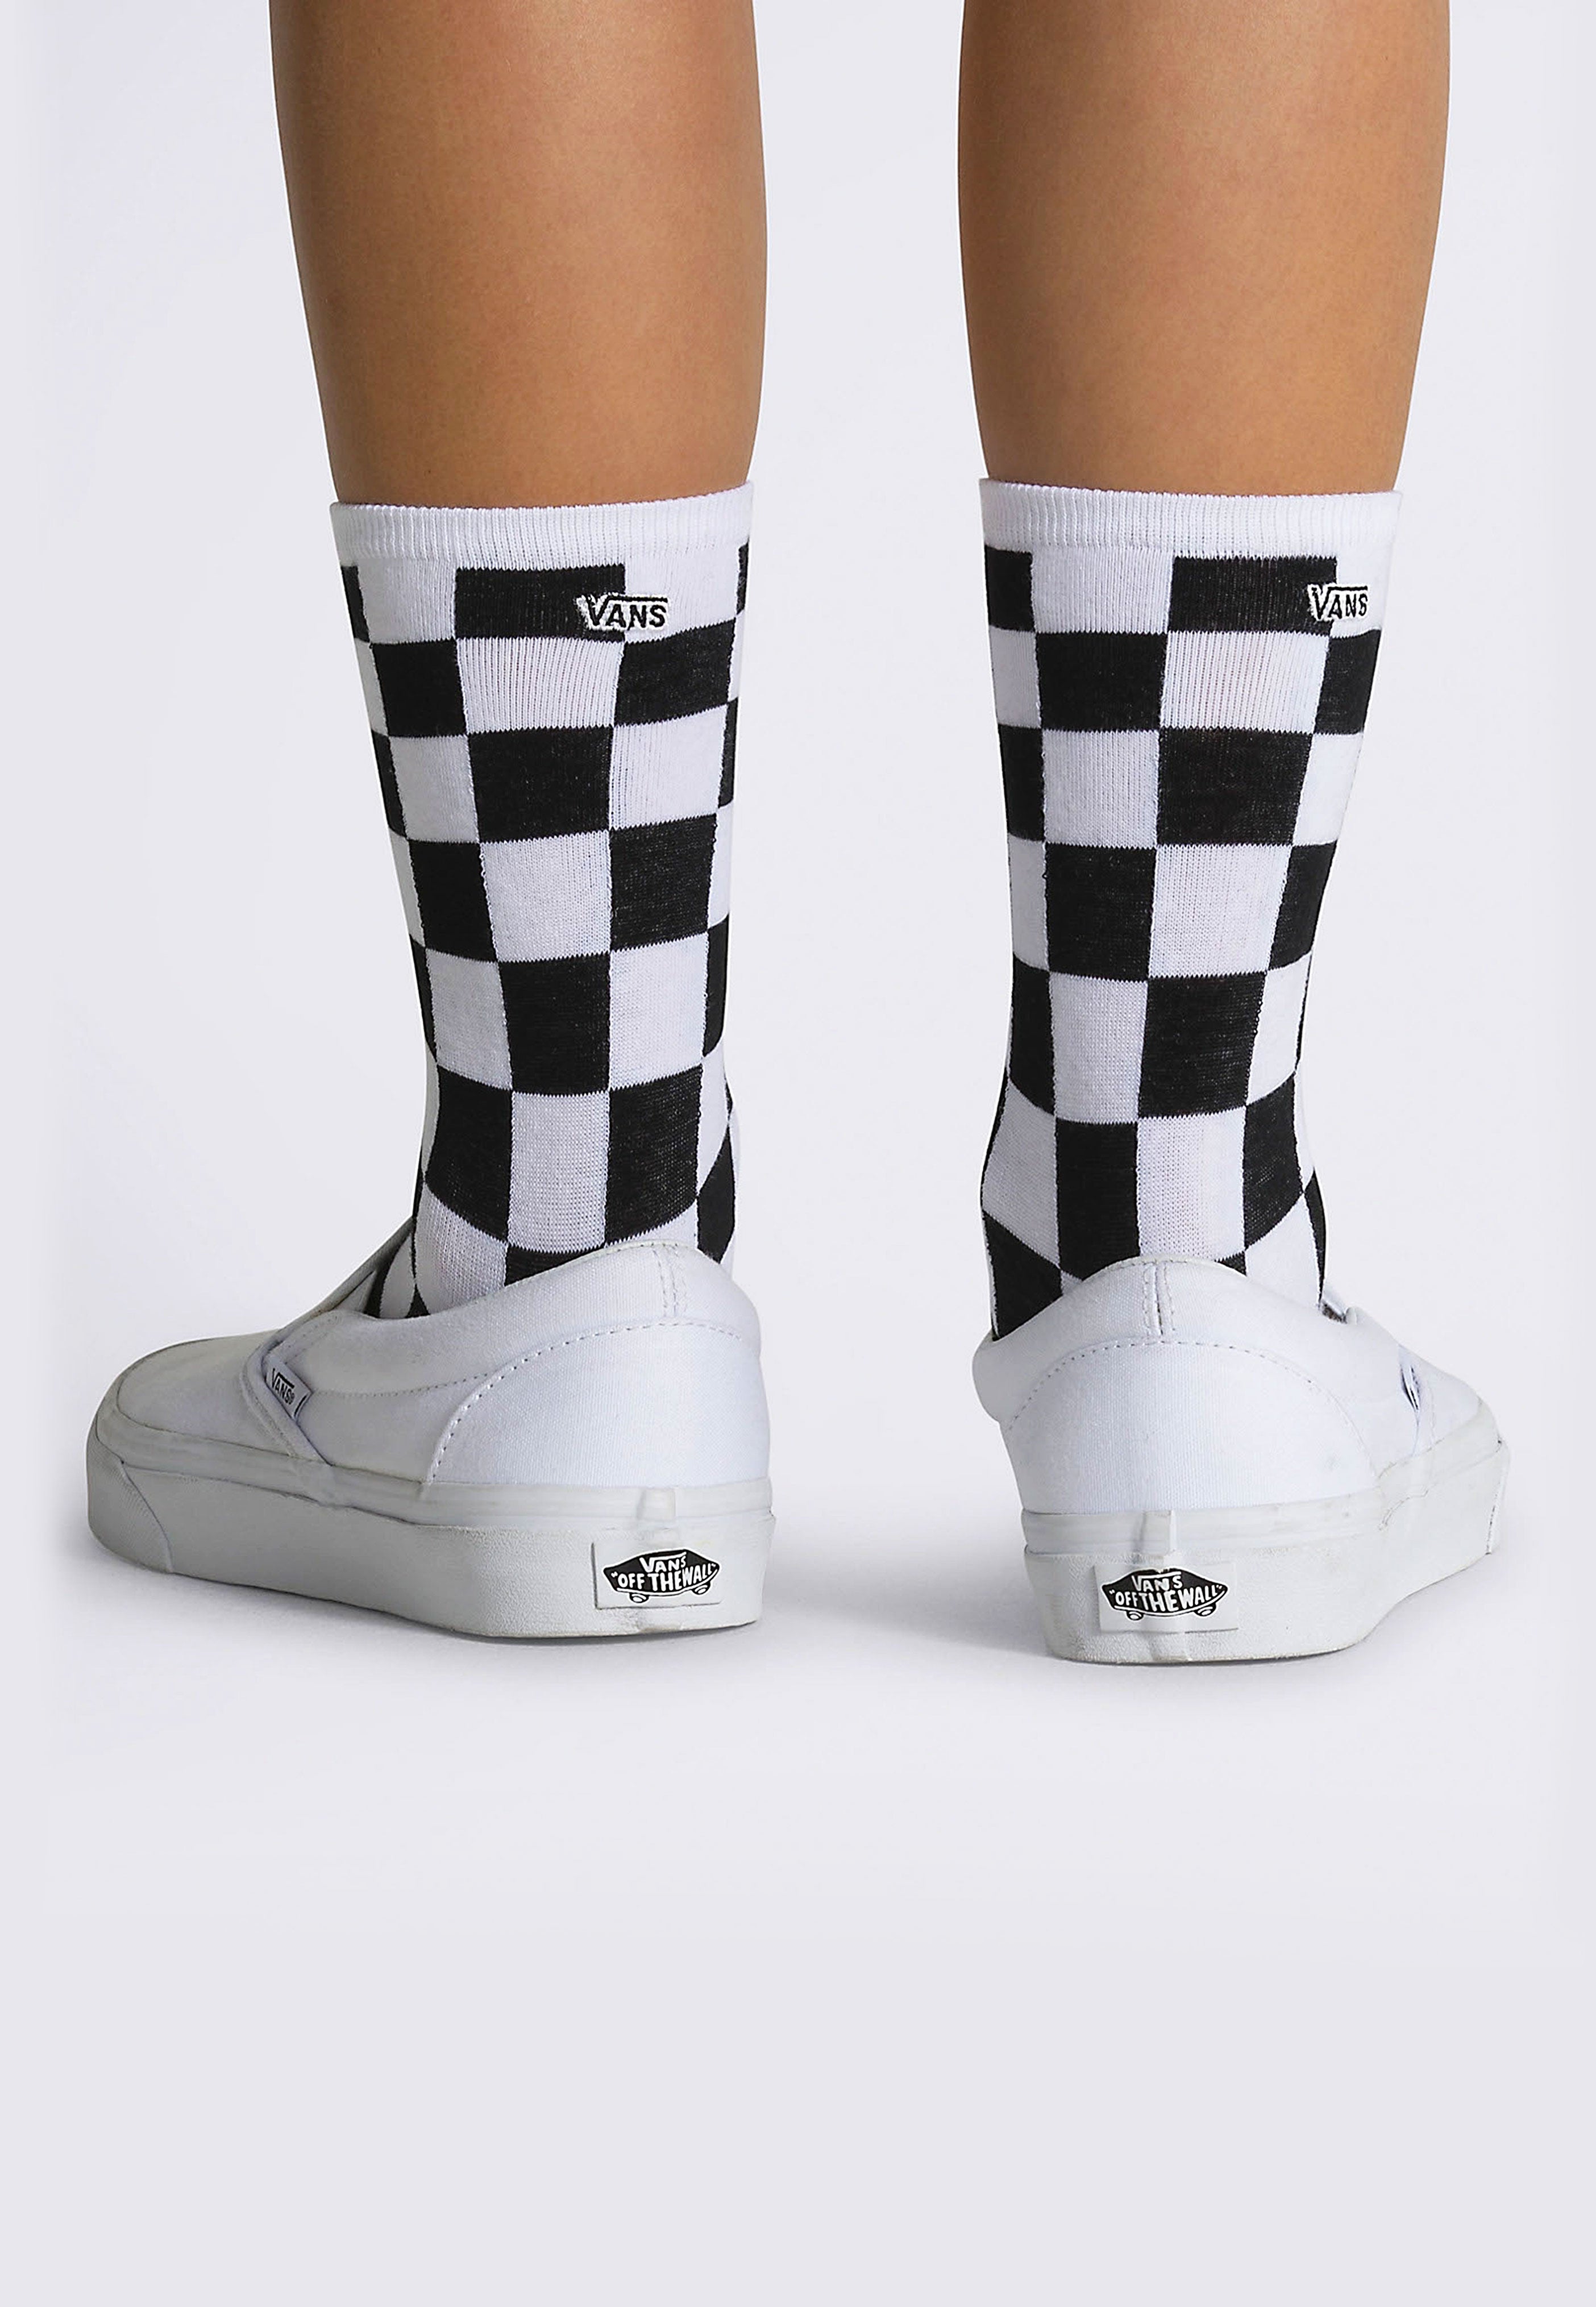 Vans - Ticker 6.5-10 Rox Ditsy Black Checkerboard - Socks